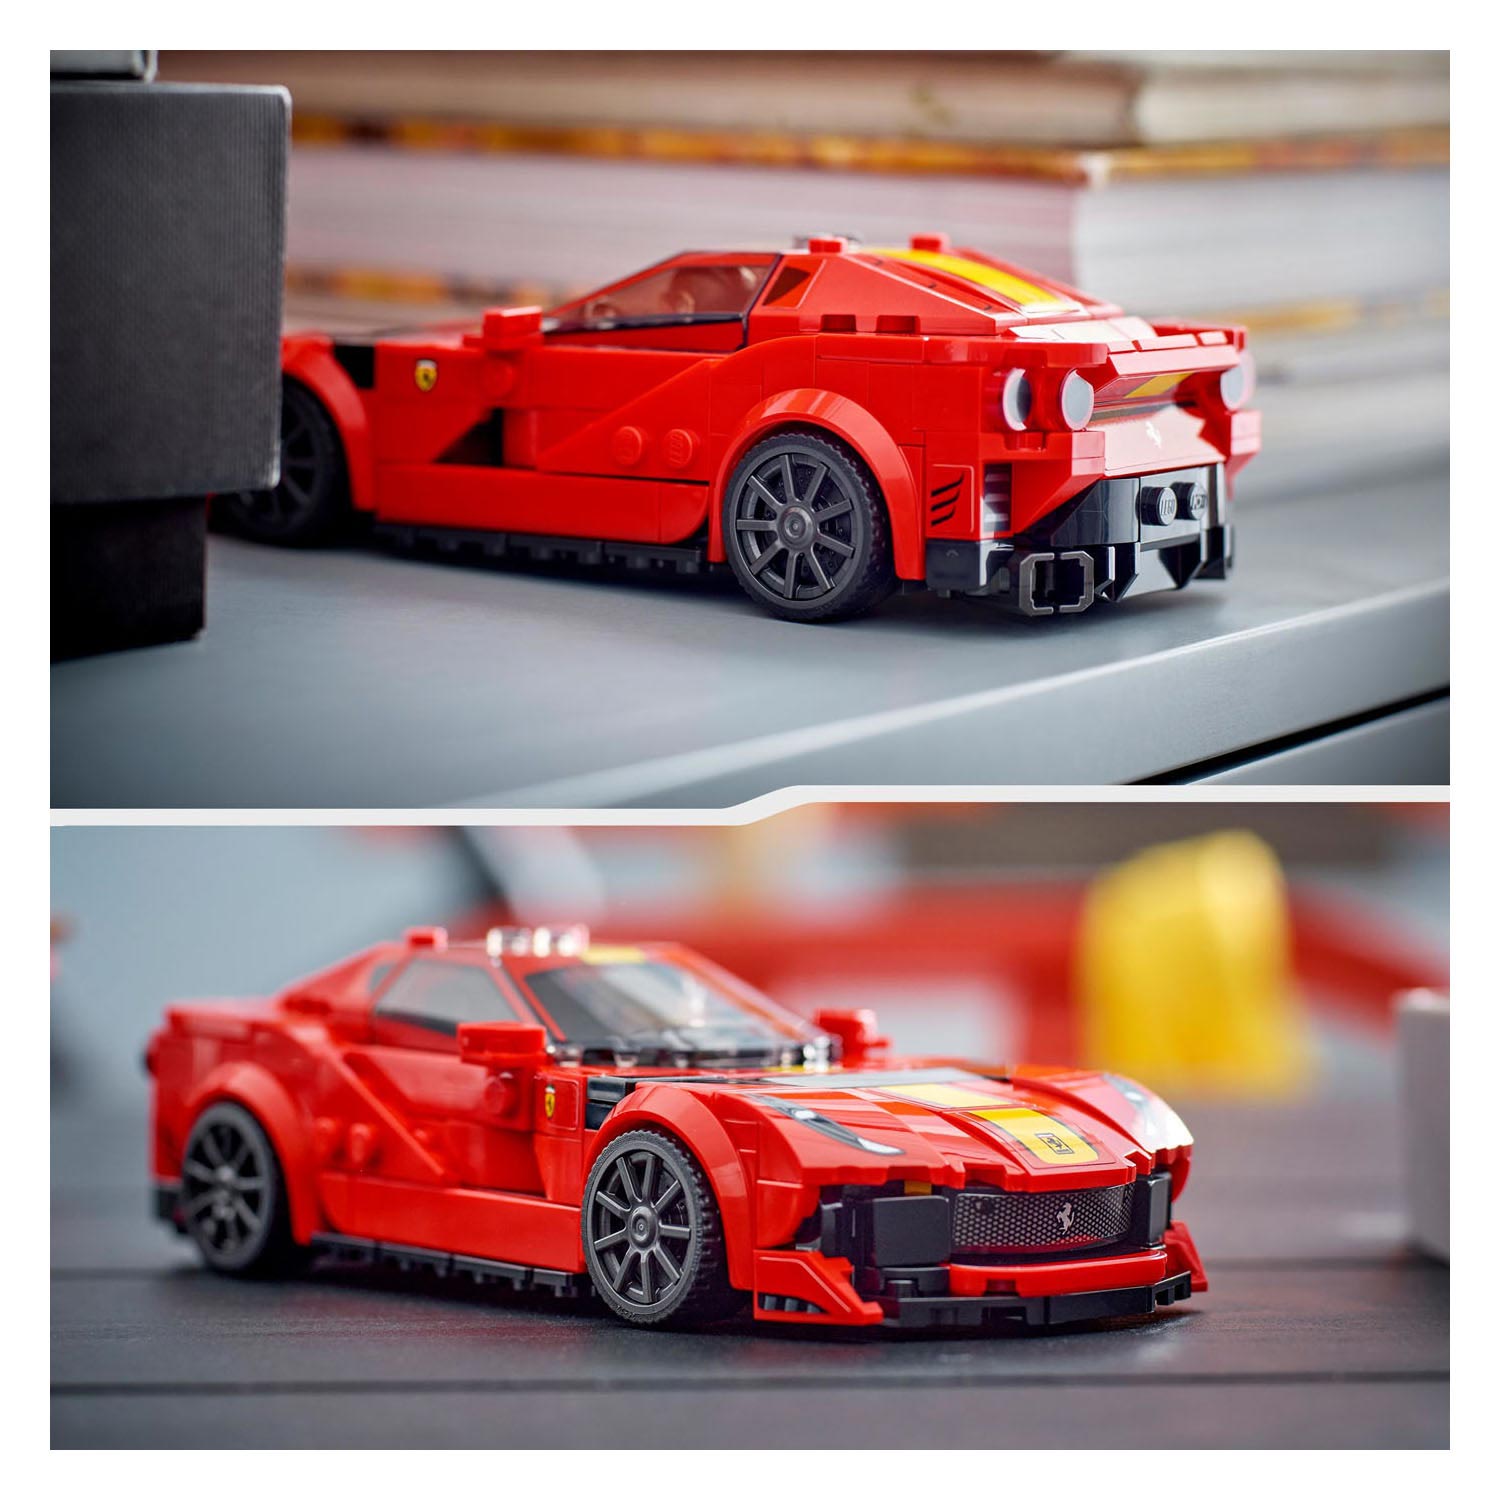 LEGO Speed ​​​​Champions 76914 Ferrari 812 Competizione